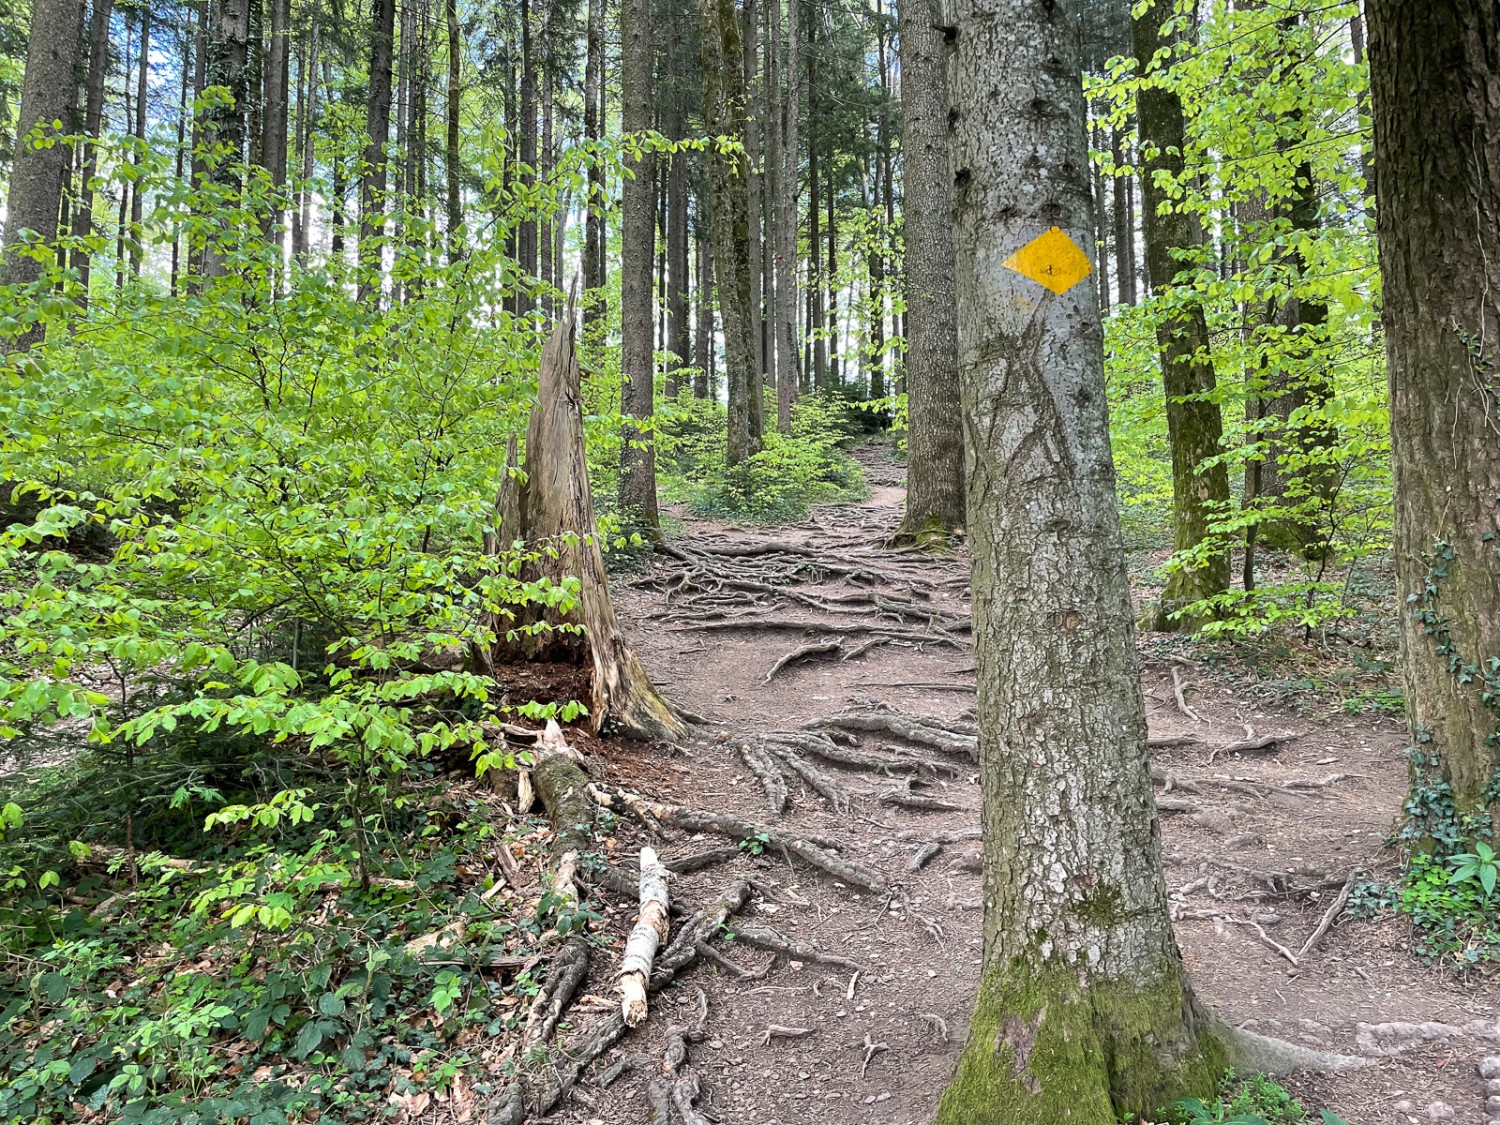 Un chemin de randonnée romantique entre les arbres. Il suffit de marcher sur la gauche pour éviter les racines. Photo: Vera In-Albon